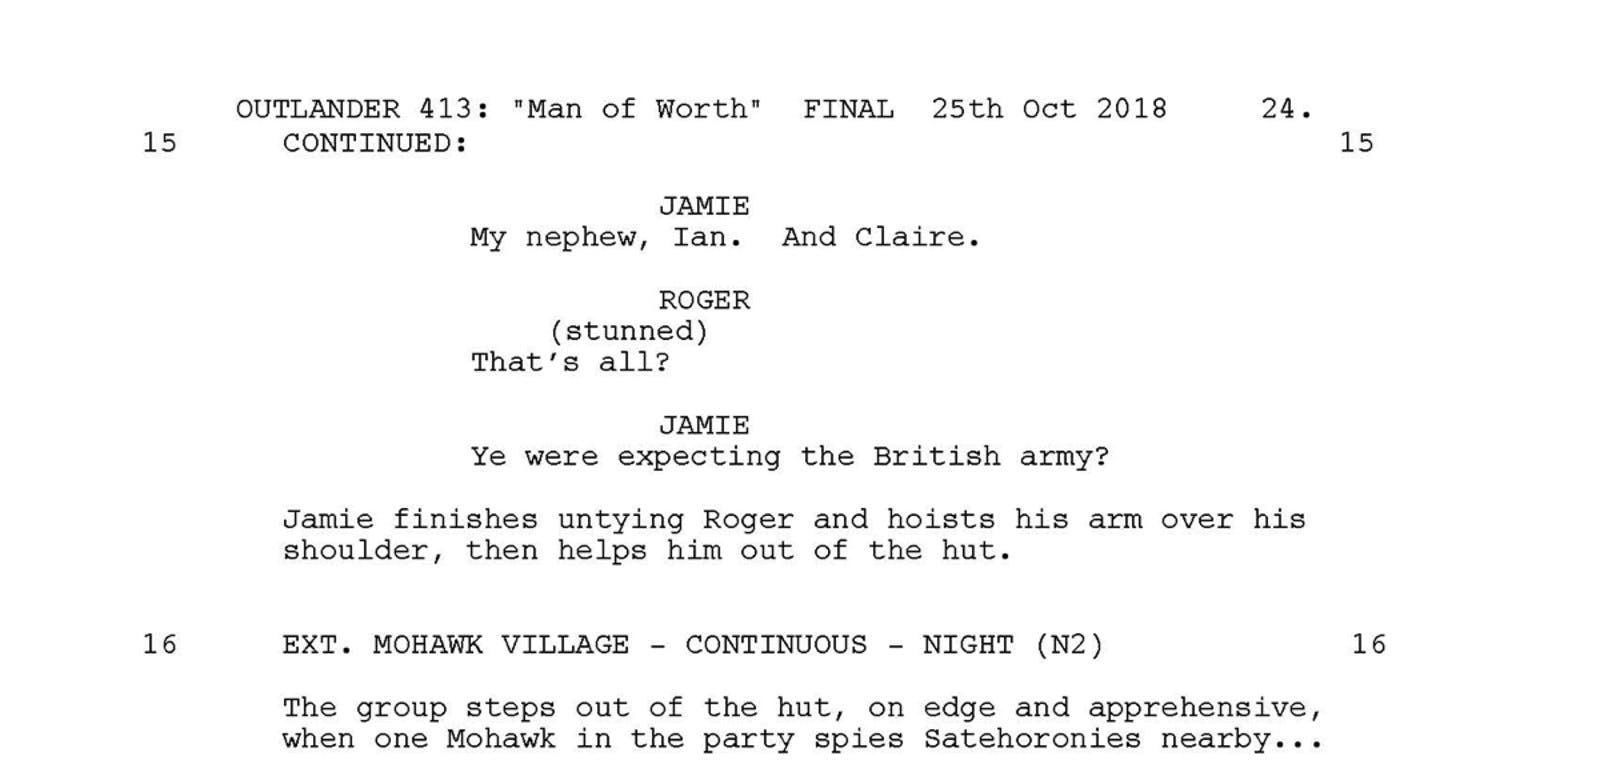 Part of the outlander script